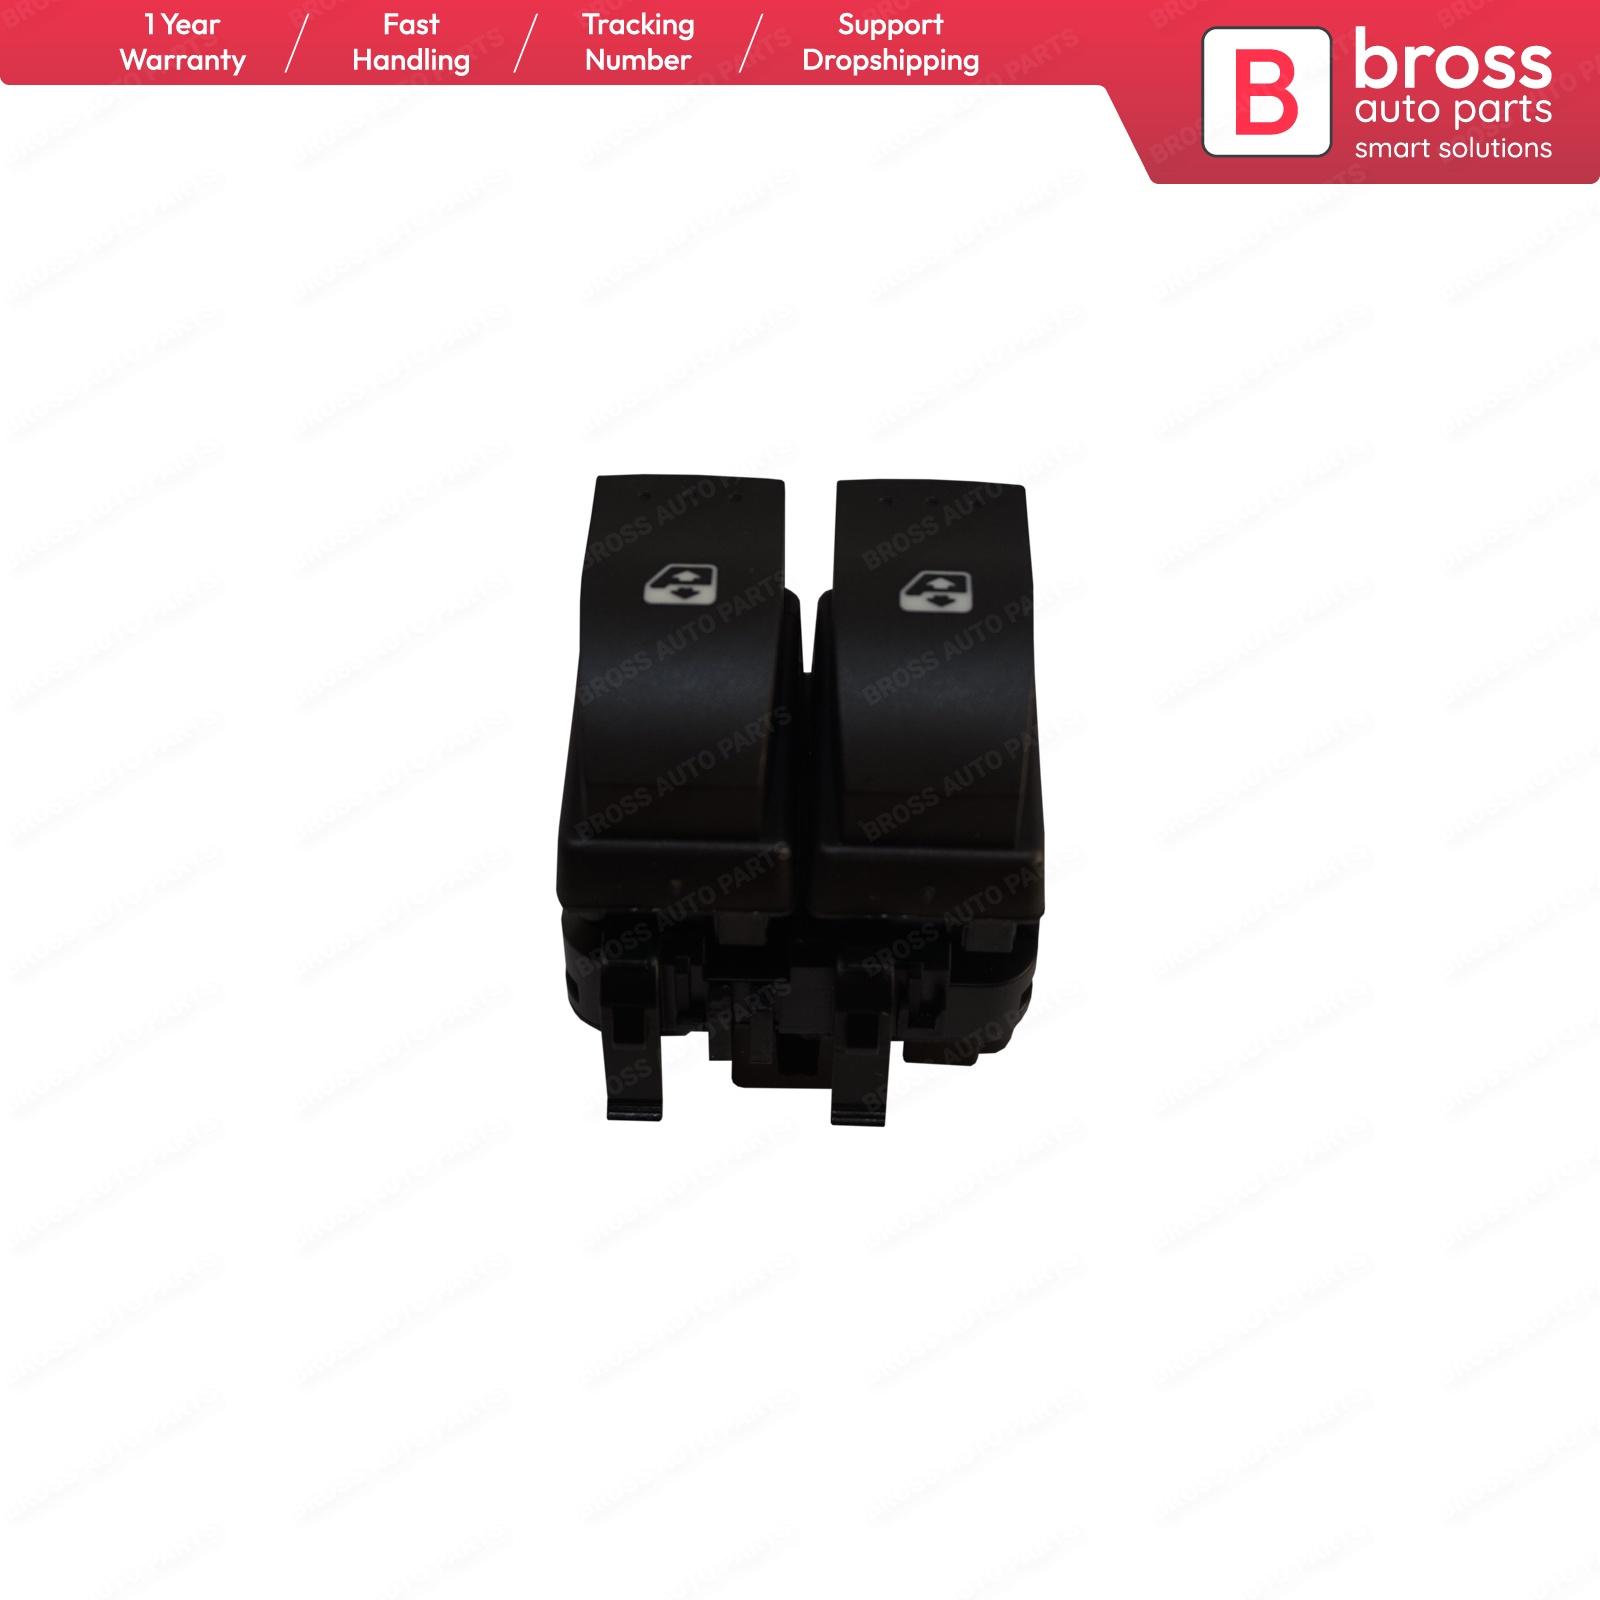 Изображение товара: Автозапчасти Bross BDP848, двойной выключатель оконного управления, 10-Pin, 8200060045, черный цвет, для Clio MK2 1998-2014, Сделано в Турции